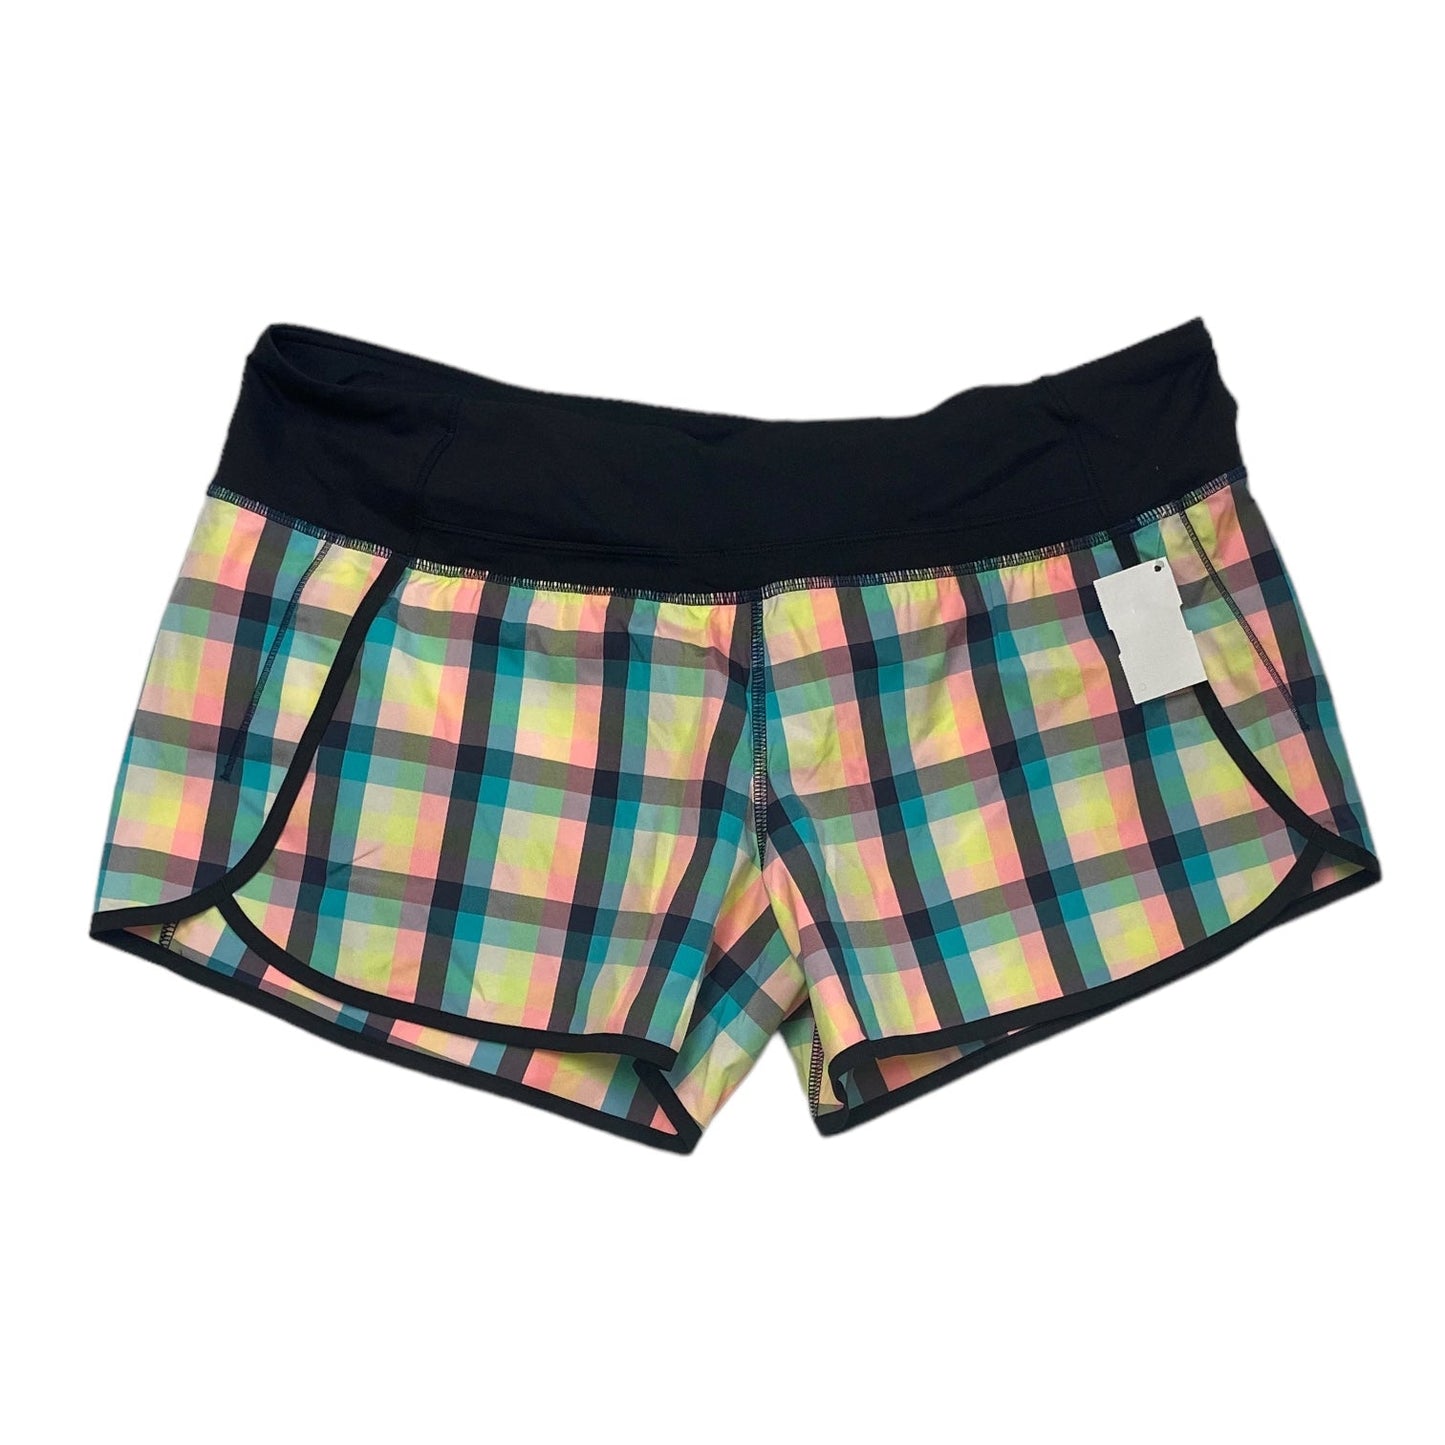 Plaid Pattern Athletic Shorts Lululemon, Size 12